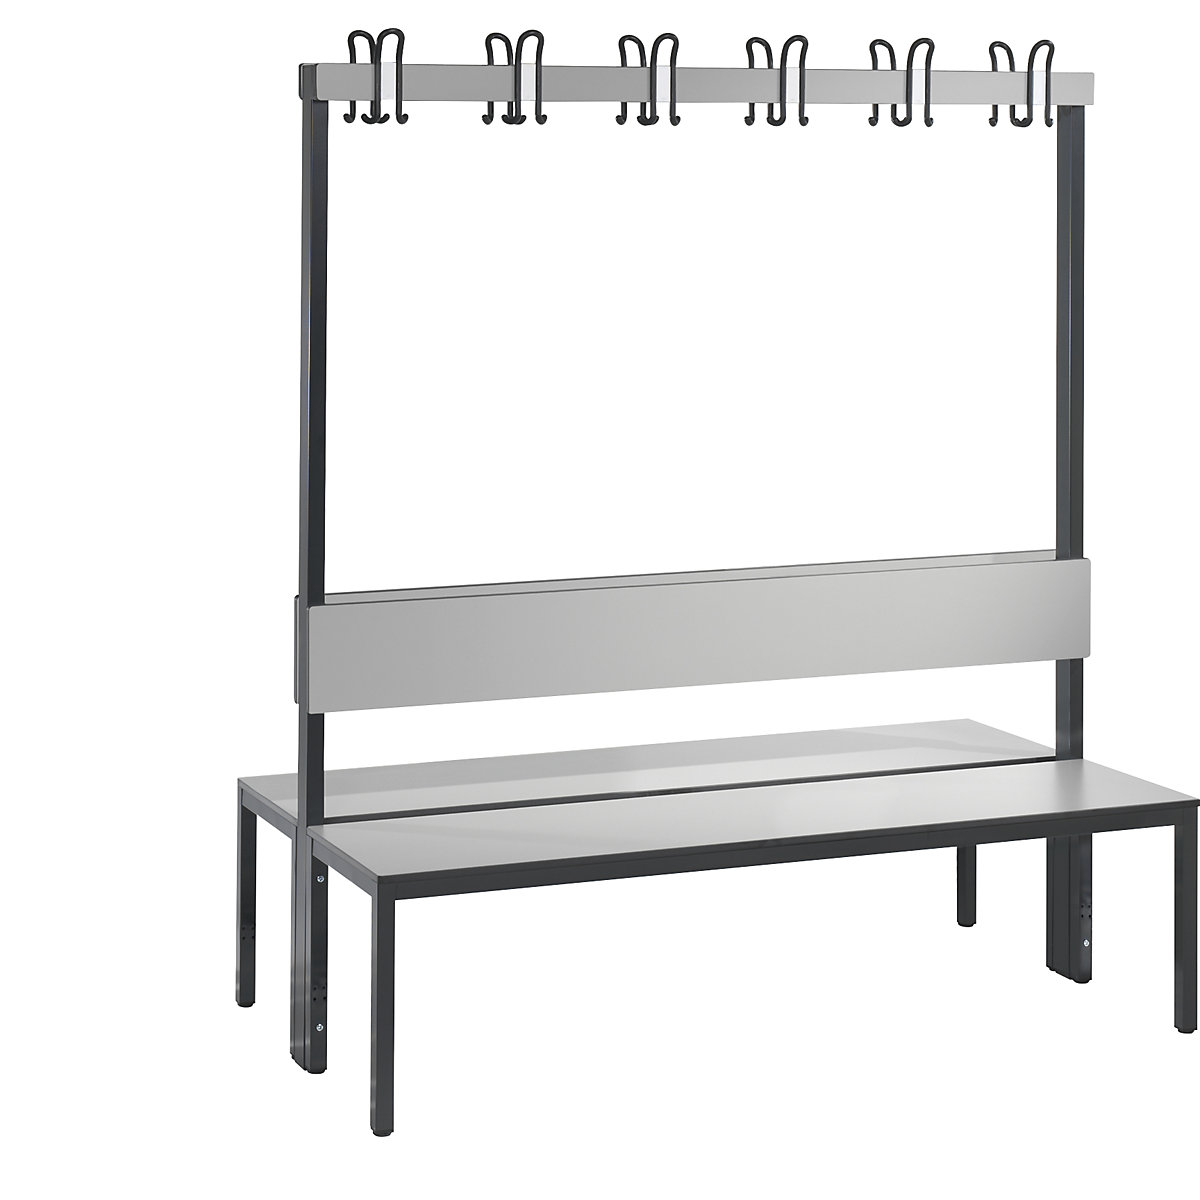 Banc de vestiaire BASIC PLUS double face – C+P, surface de l'assise en stratifié HPL, barre à patères, longueur 1500 mm, gris argent-5